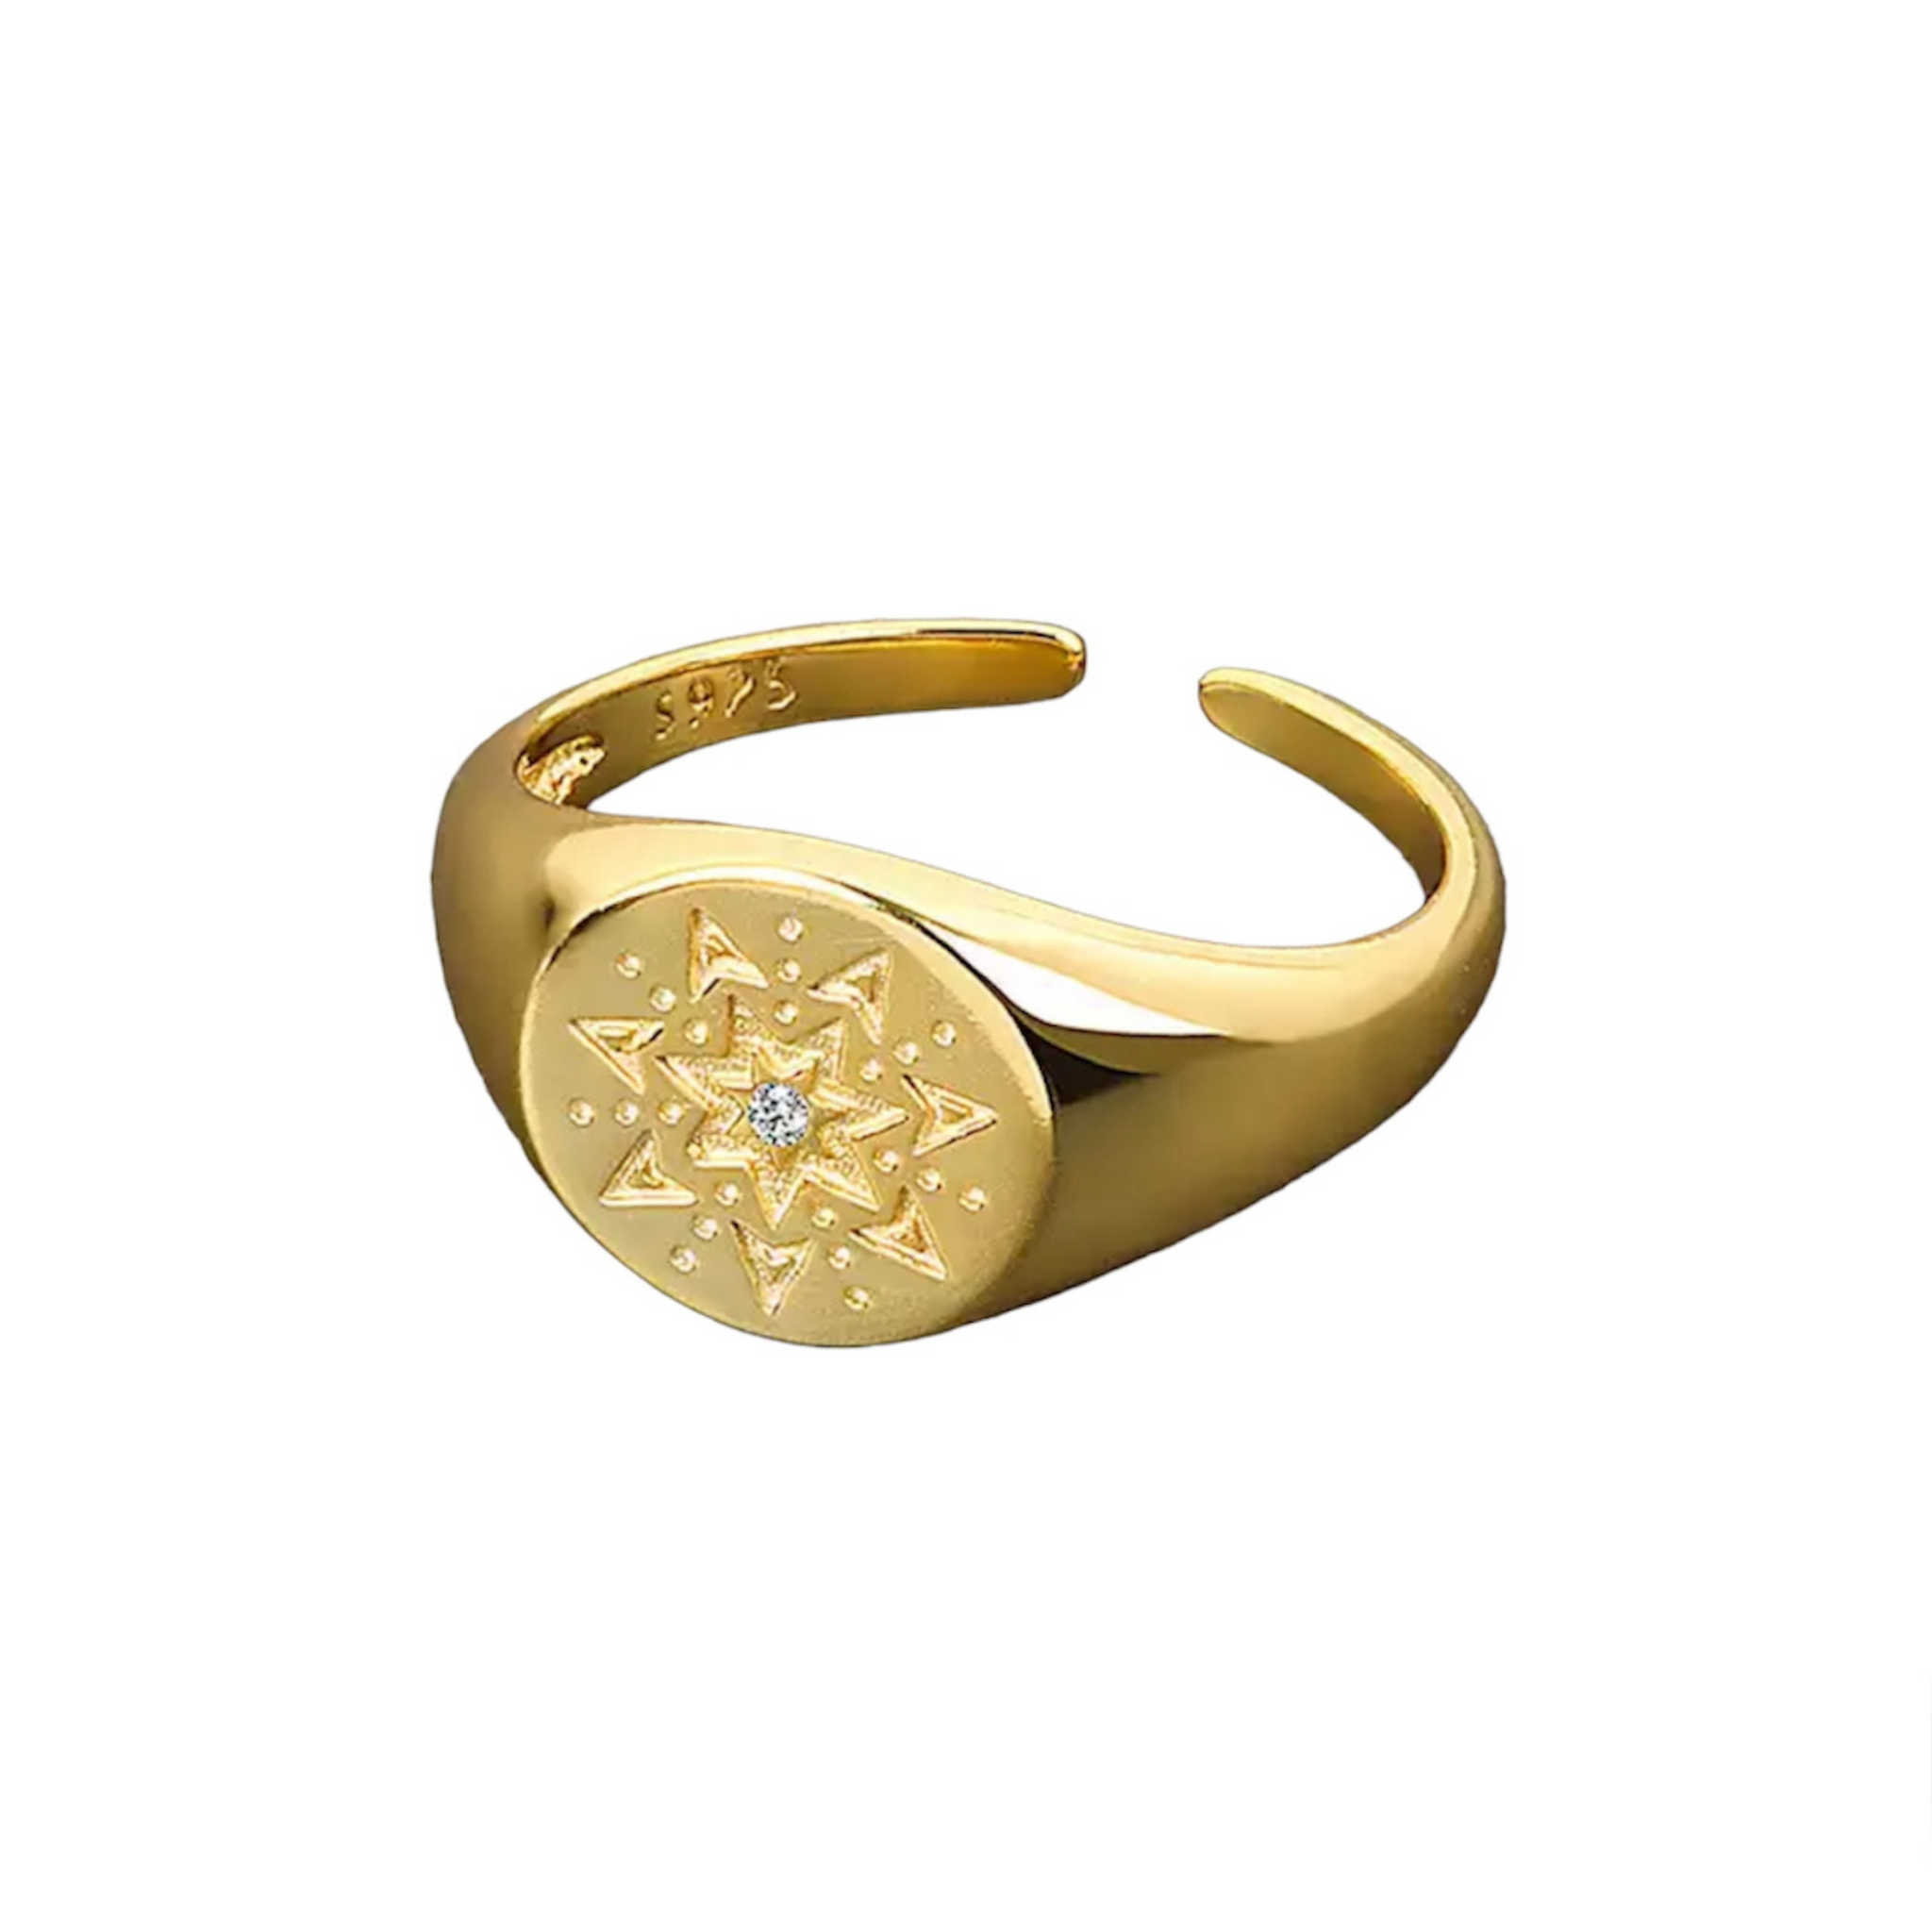 Maevry ring i guld med flot motiv og små glitrende zircon sten.  Denne smukke ring, er til dig som elsker, at pifte dit look op med unikke smykker. Den kan også sammensættes med mange af vores andre ringe, for et mere unikt look.  Materiale: 70% S925 sterling sølv, 30% rustfri stål, guldbelagt, zircon sten Størrelse: Justerbar